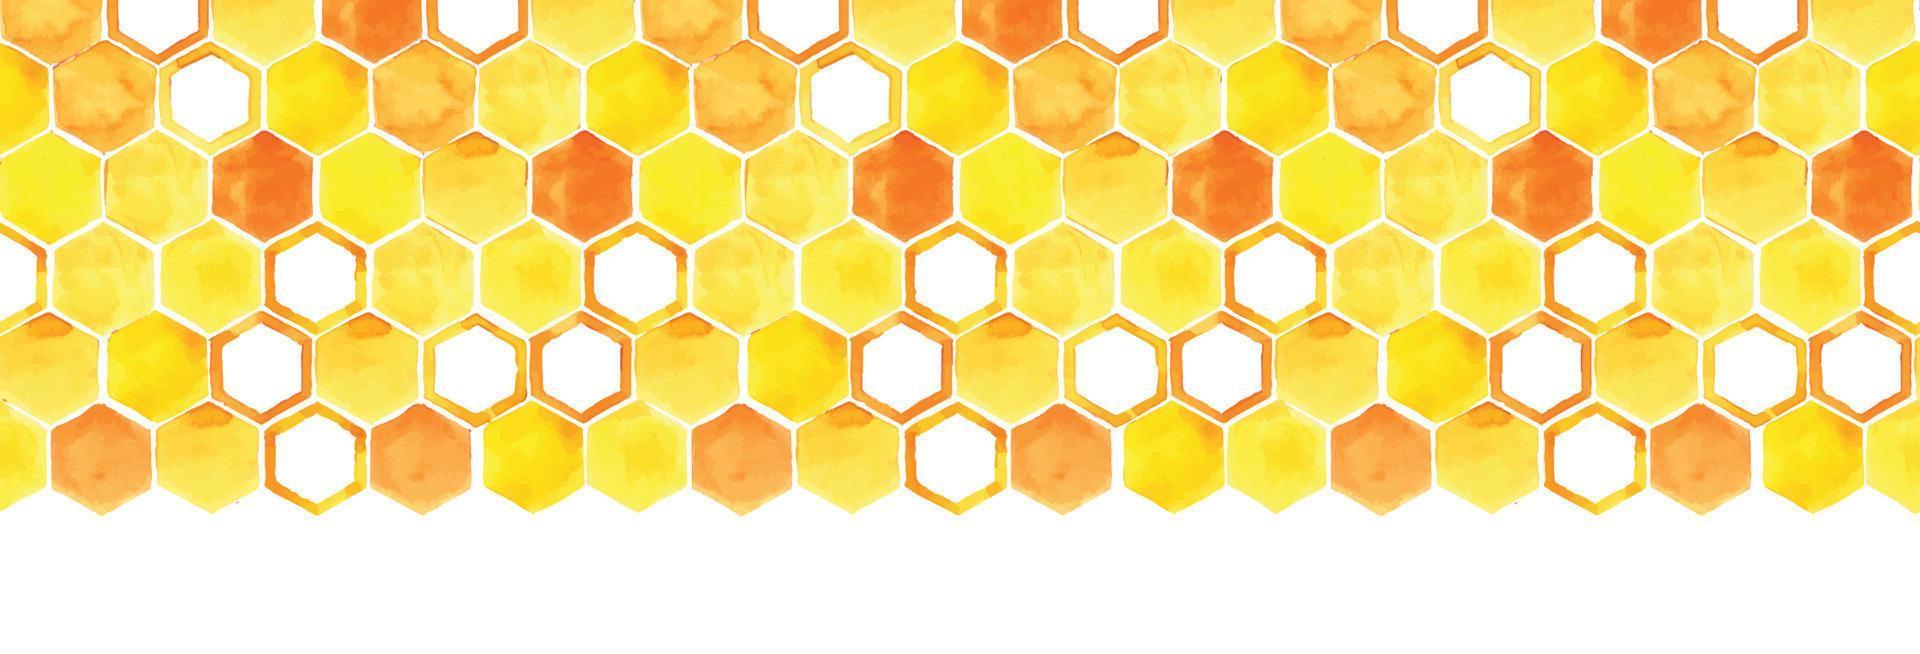 naadloze aquarel grens met honingraat. gele en oranje honingraat met honing op een witte achtergrond. naadloos patroon, webbanner. illustratie over het thema honing, bijenteelt, landbouw, eco foo vector